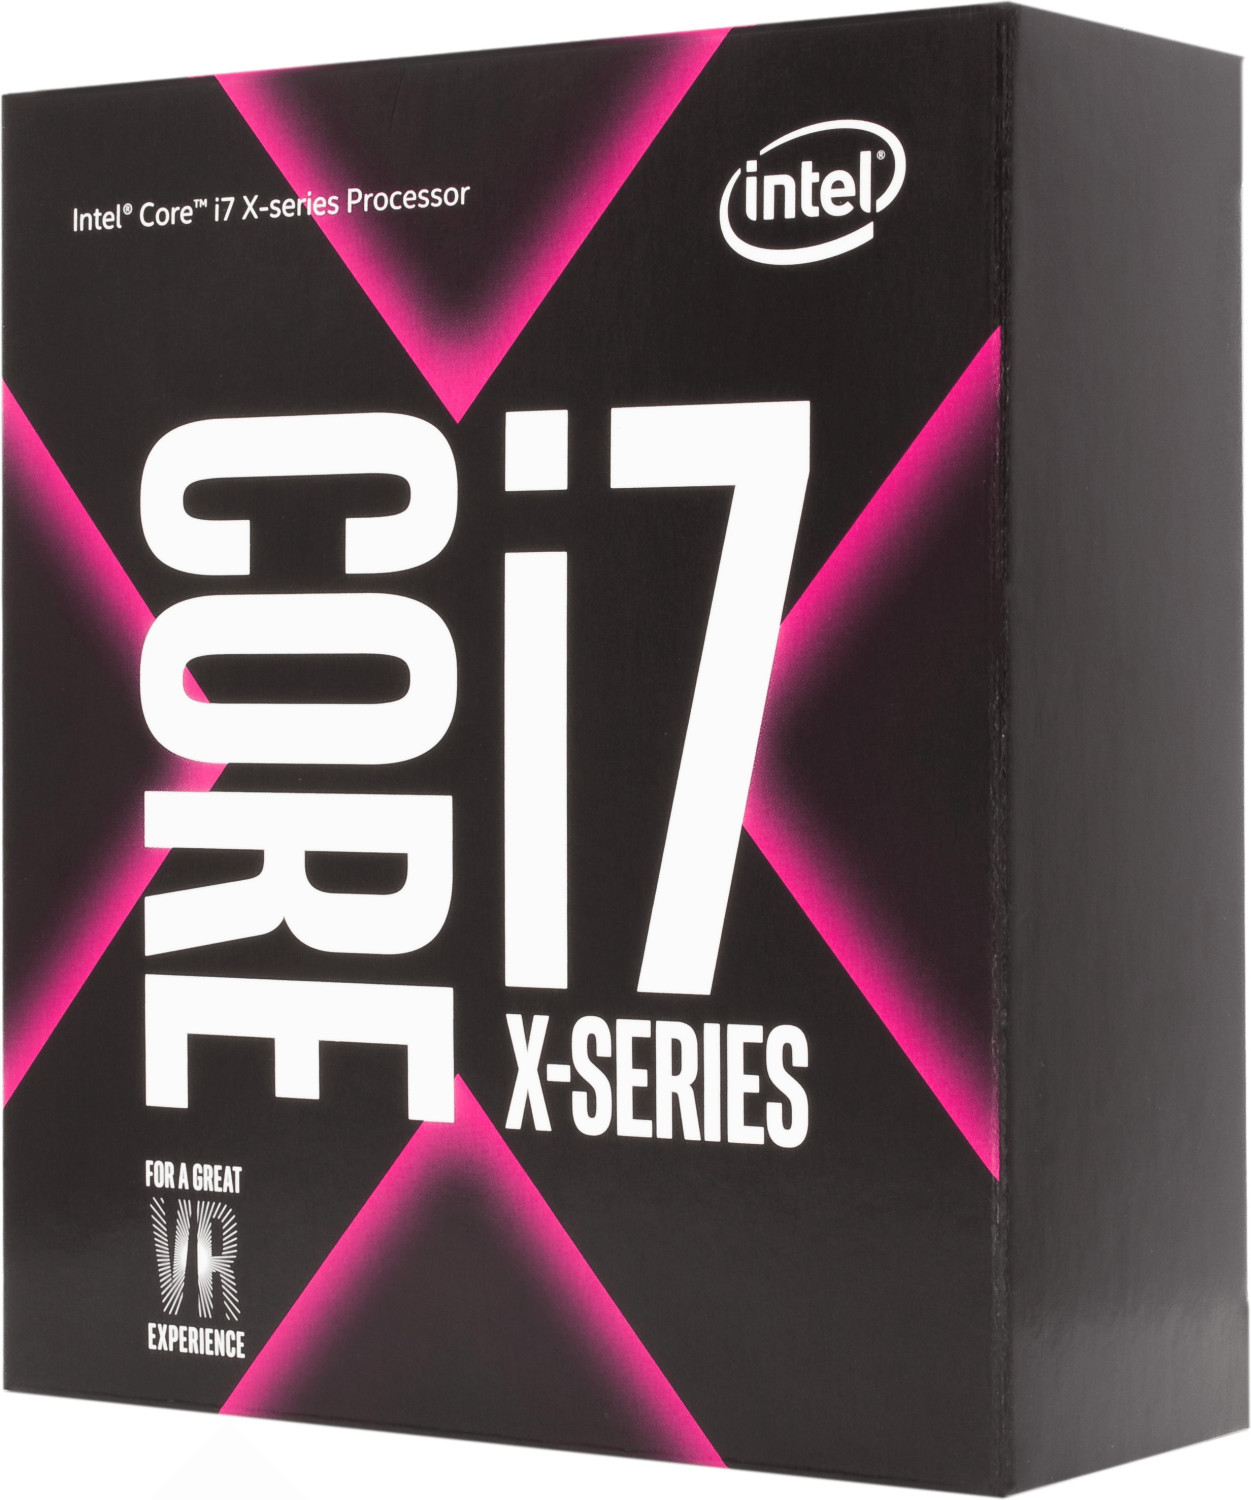 Intel Core i7-7800X Box WOF (Socket 2066, 14nm, BX80673I77800X)